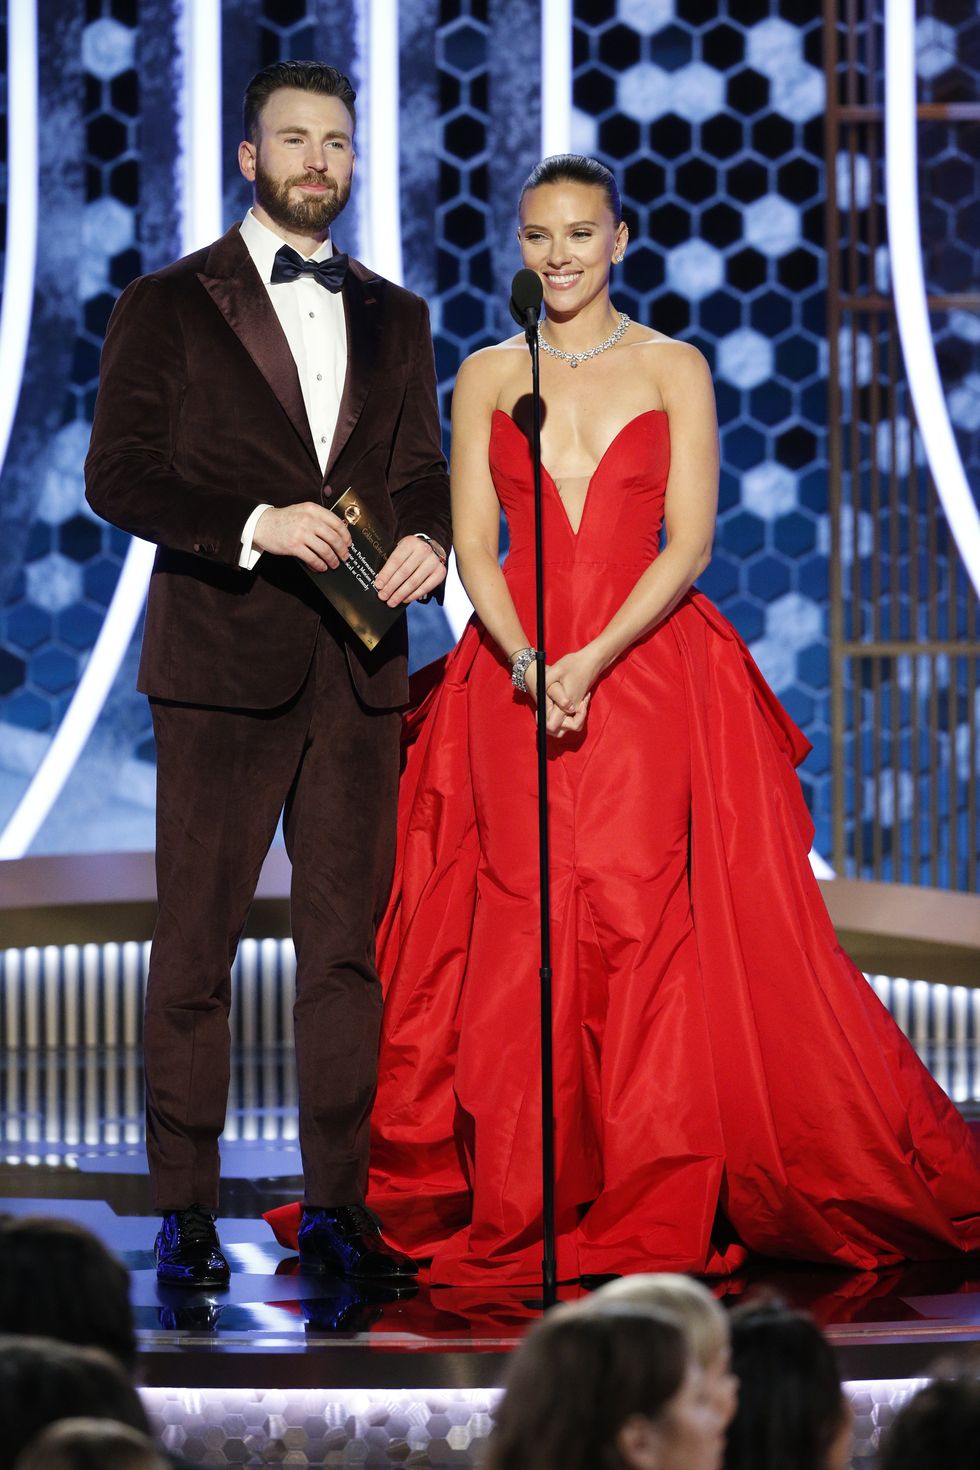 Golden Globe Awards - Scarlett Johansson and Chris Evans